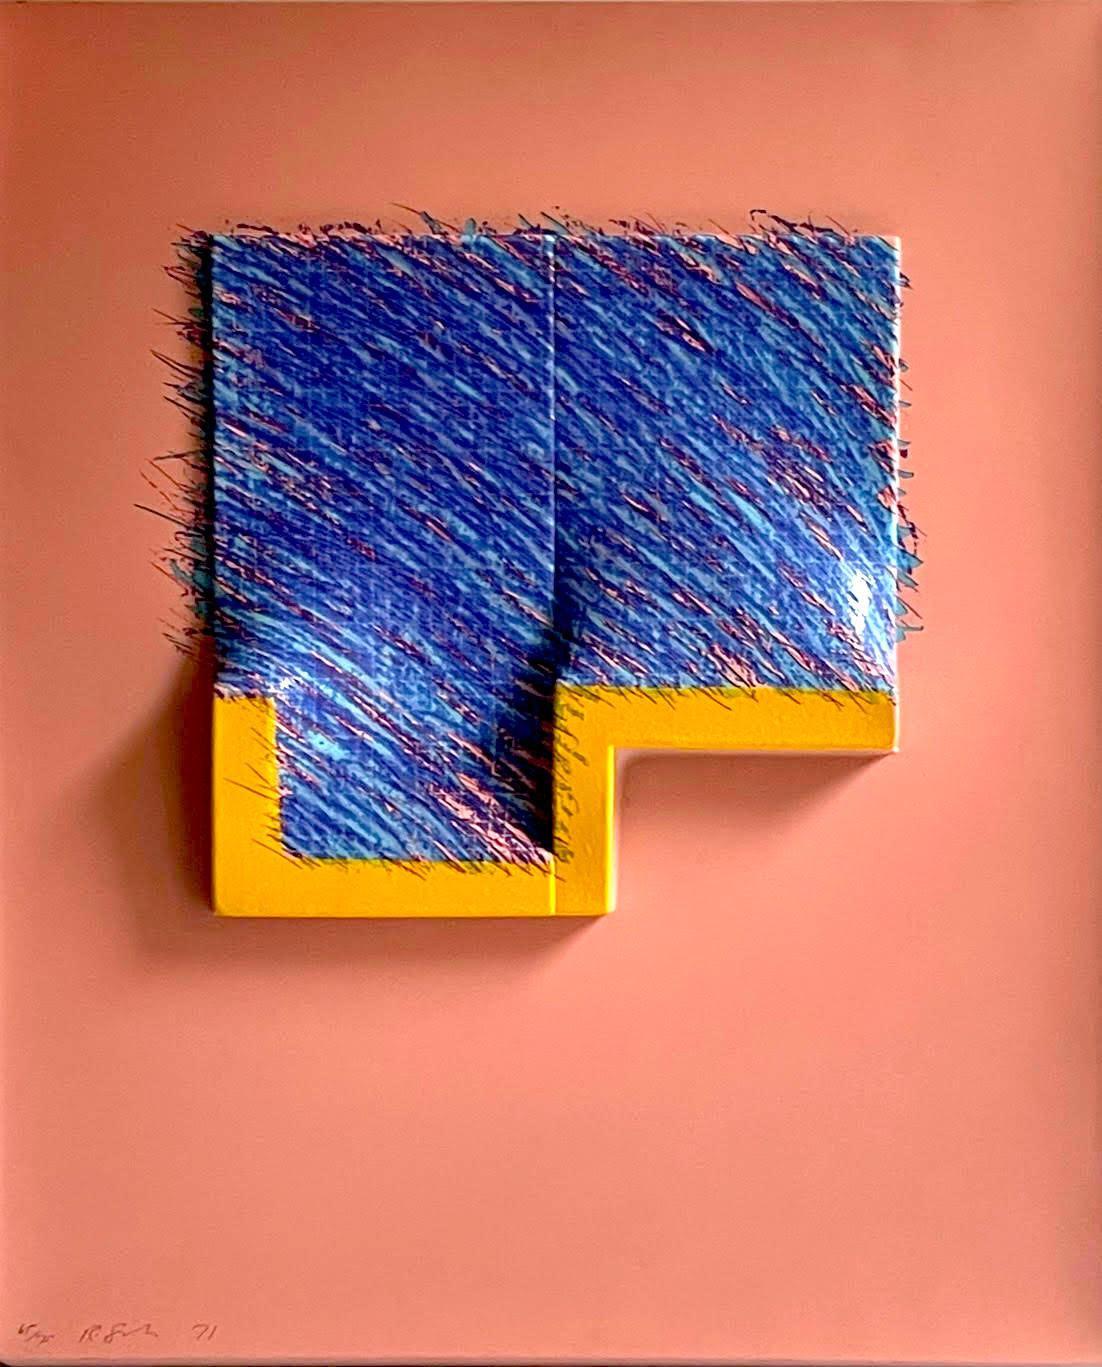 Richard Smith
Sieben aus der Logo-Suite (Rosa-Blau), 1971
Siebdruck auf 3-D-geformtem Kunststoff über Holz
Mit Bleistift signiert, datiert und auf der Vorderseite nummeriert 65 aus der Auflage von 75
23 1/2 × 19 1/2 × 3 Zoll
Ungerahmt (das Werk kann